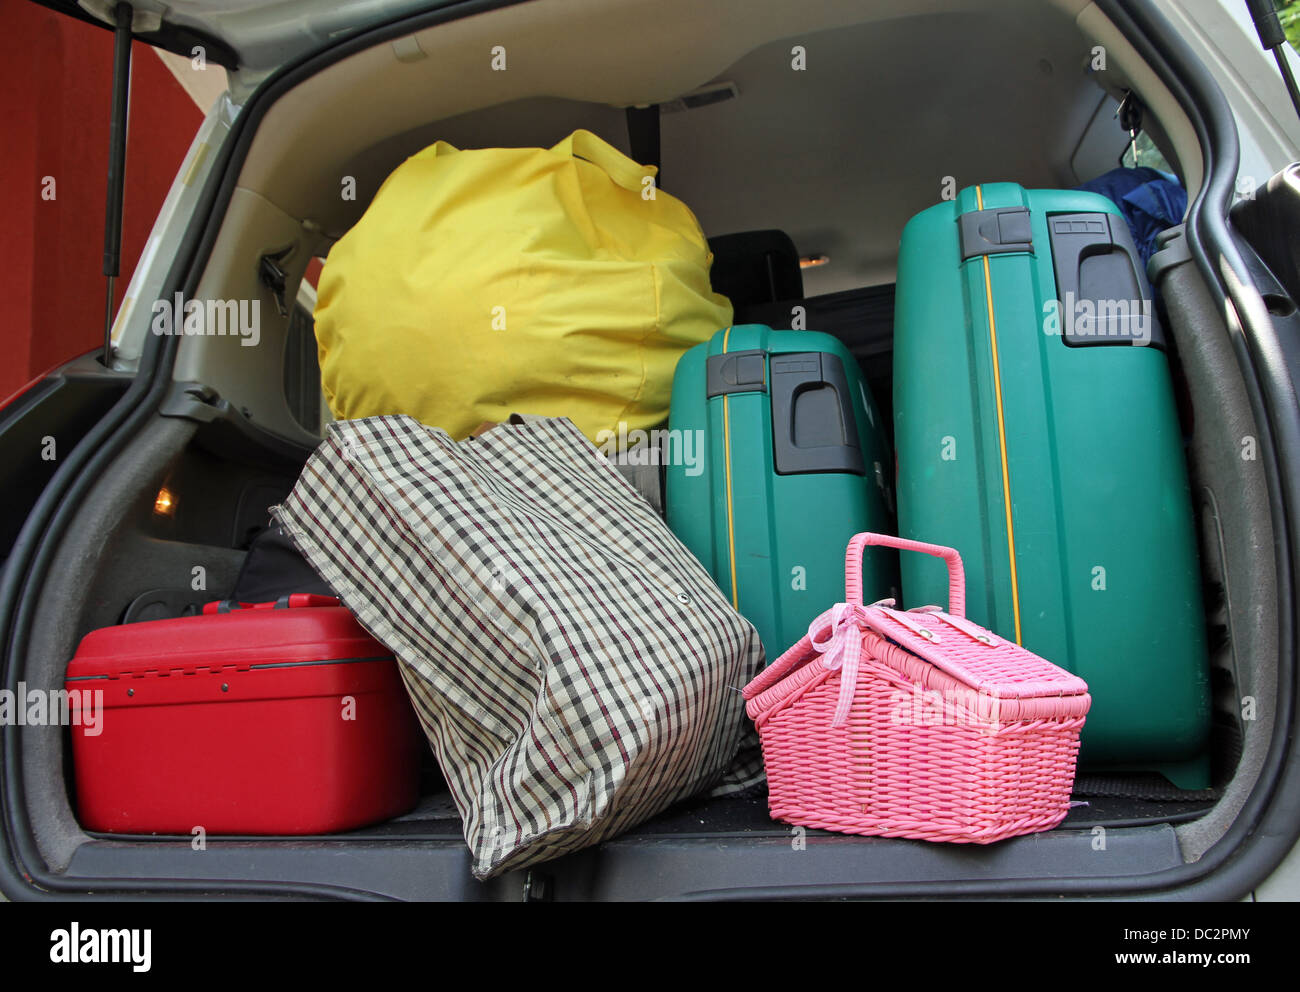 https://c8.alamy.com/compit/dc2pmy/due-valigia-verde-e-un-cestino-di-rosa-borsa-nel-bagagliaio-della-macchina-di-famiglia-pronto-per-le-vacanze-dc2pmy.jpg